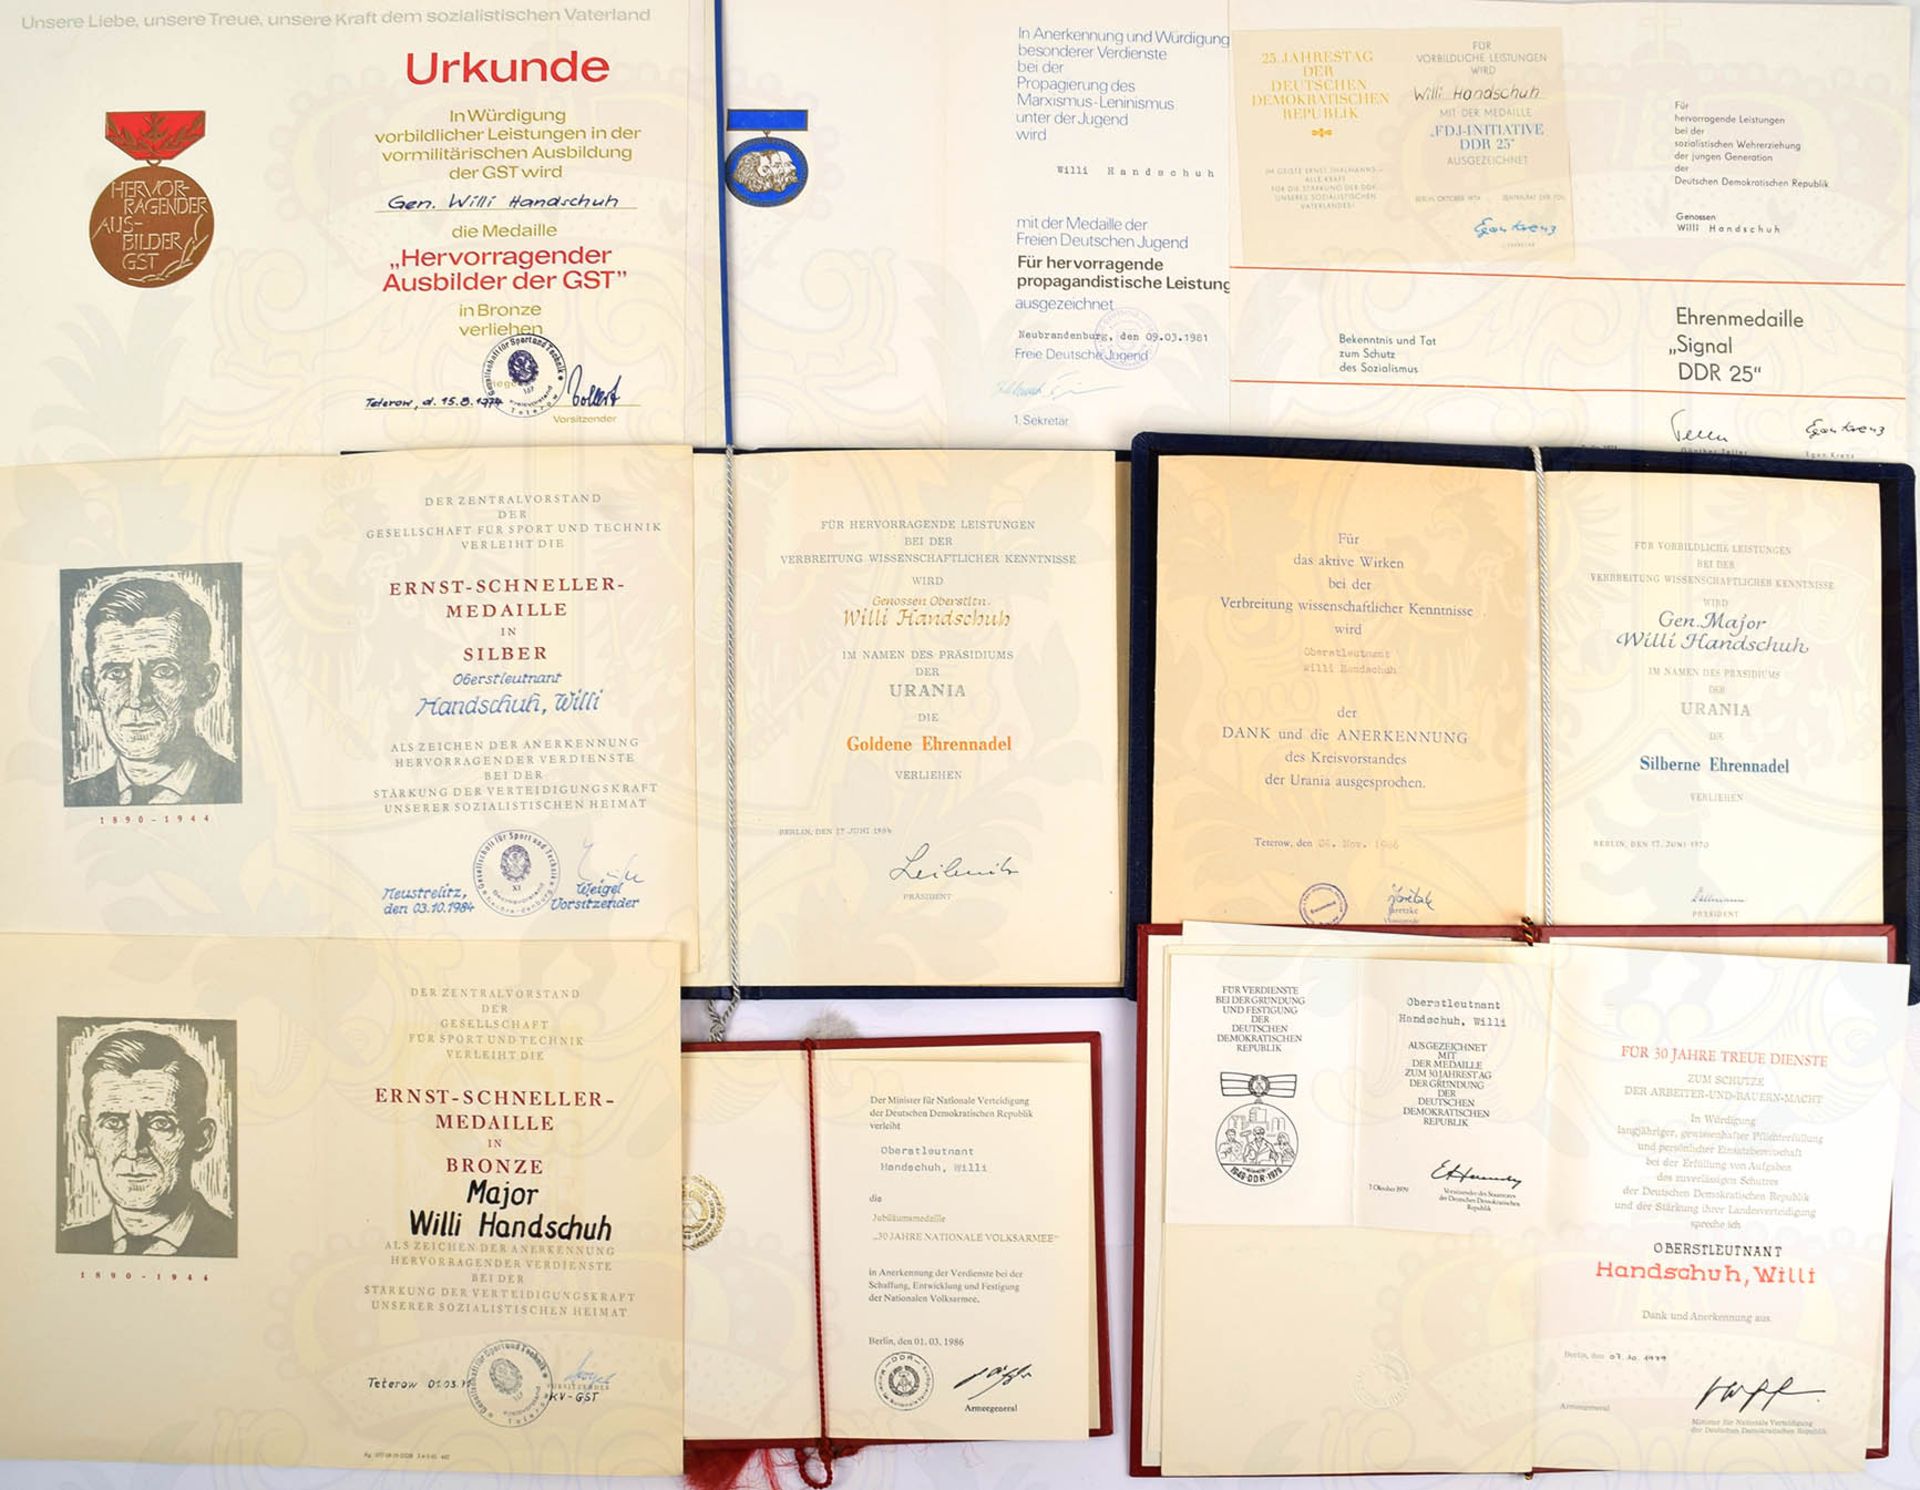 URKUNDENGRUPPE OBERSTLEUTNANT NVA, 1957-1986, Med. Treue Dienste, alle Stufen; Verdienstmedaille